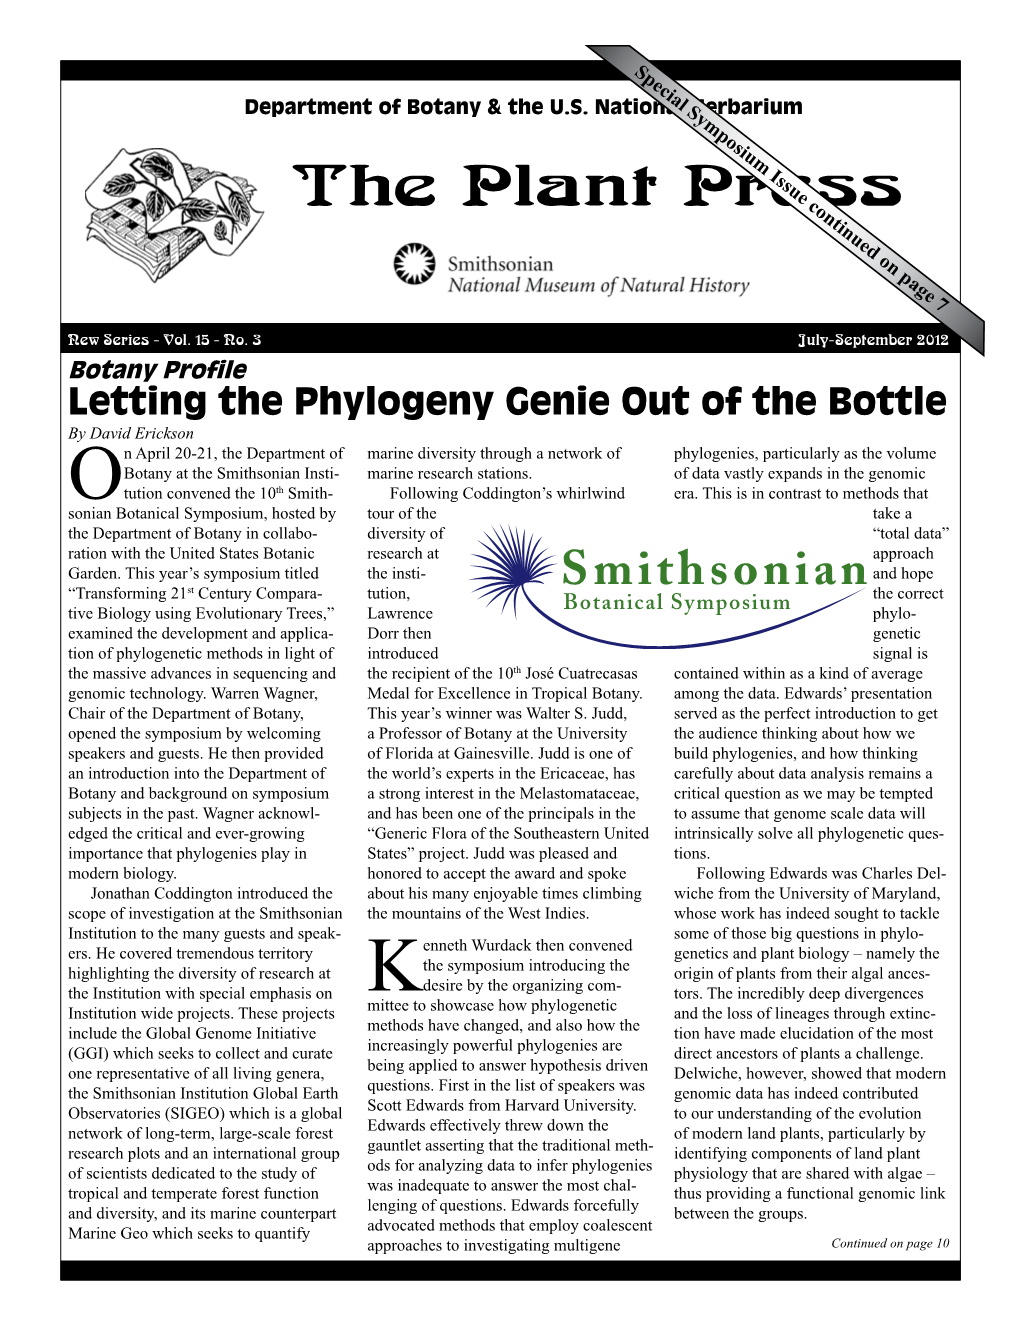 Plant Press Vol. 15, No. 3